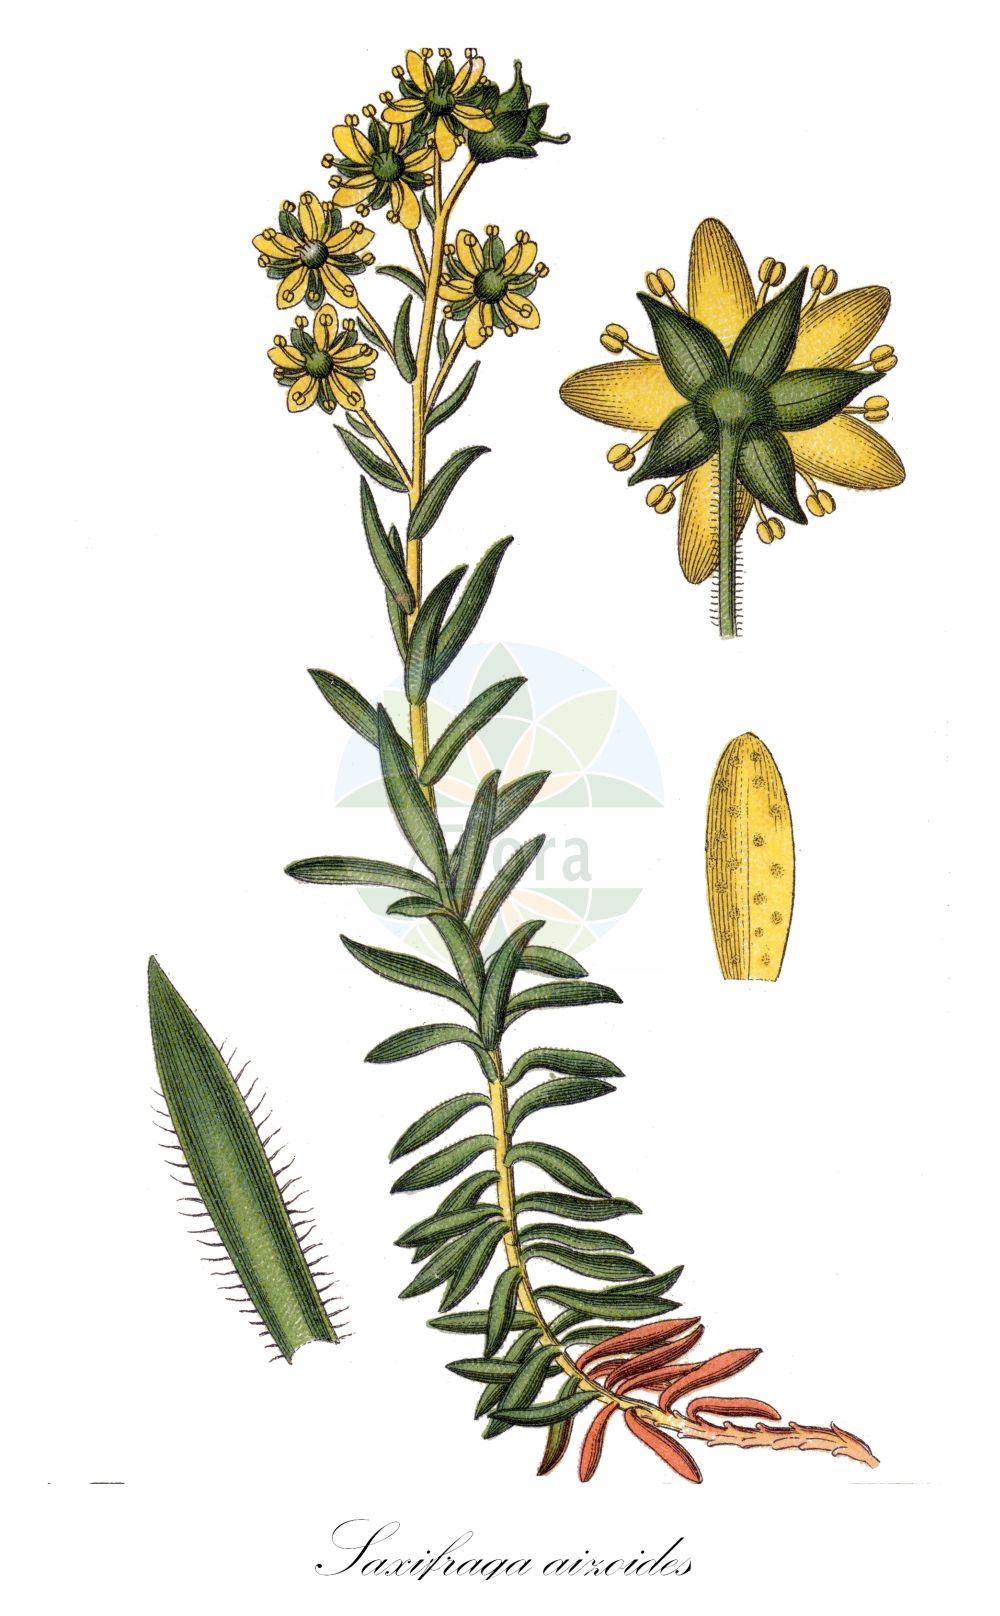 Historische Abbildung von Saxifraga aizoides (Fetthennen-Steinbrech - Yellow Saxifrage). Das Bild zeigt Blatt, Bluete, Frucht und Same. ---- Historical Drawing of Saxifraga aizoides (Fetthennen-Steinbrech - Yellow Saxifrage). The image is showing leaf, flower, fruit and seed.(Saxifraga aizoides,Fetthennen-Steinbrech,Yellow Saxifrage,Saxifraga aizoides,Saxifraga aizoidoides,Fetthennen-Steinbrech,Bach-Steinbrech,Yellow Saxifrage,Yellow Mountain Saxifrage,Saxifraga,Steinbrech,Saxifrage,Saxifragaceae,Steinbrechgewächse,Saxifrage family,Blatt,Bluete,Frucht,Same,leaf,flower,fruit,seed,Sturm (1796f))